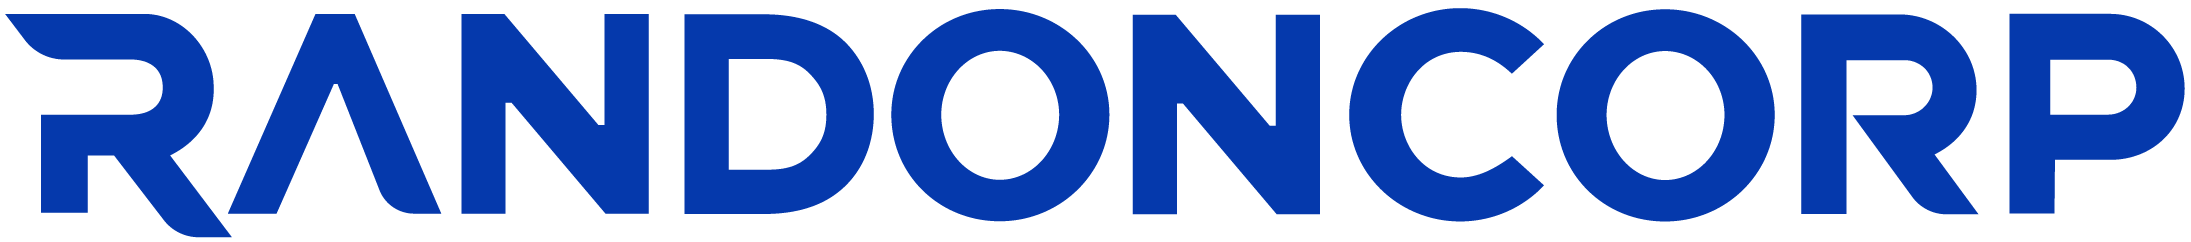 Logo do blog